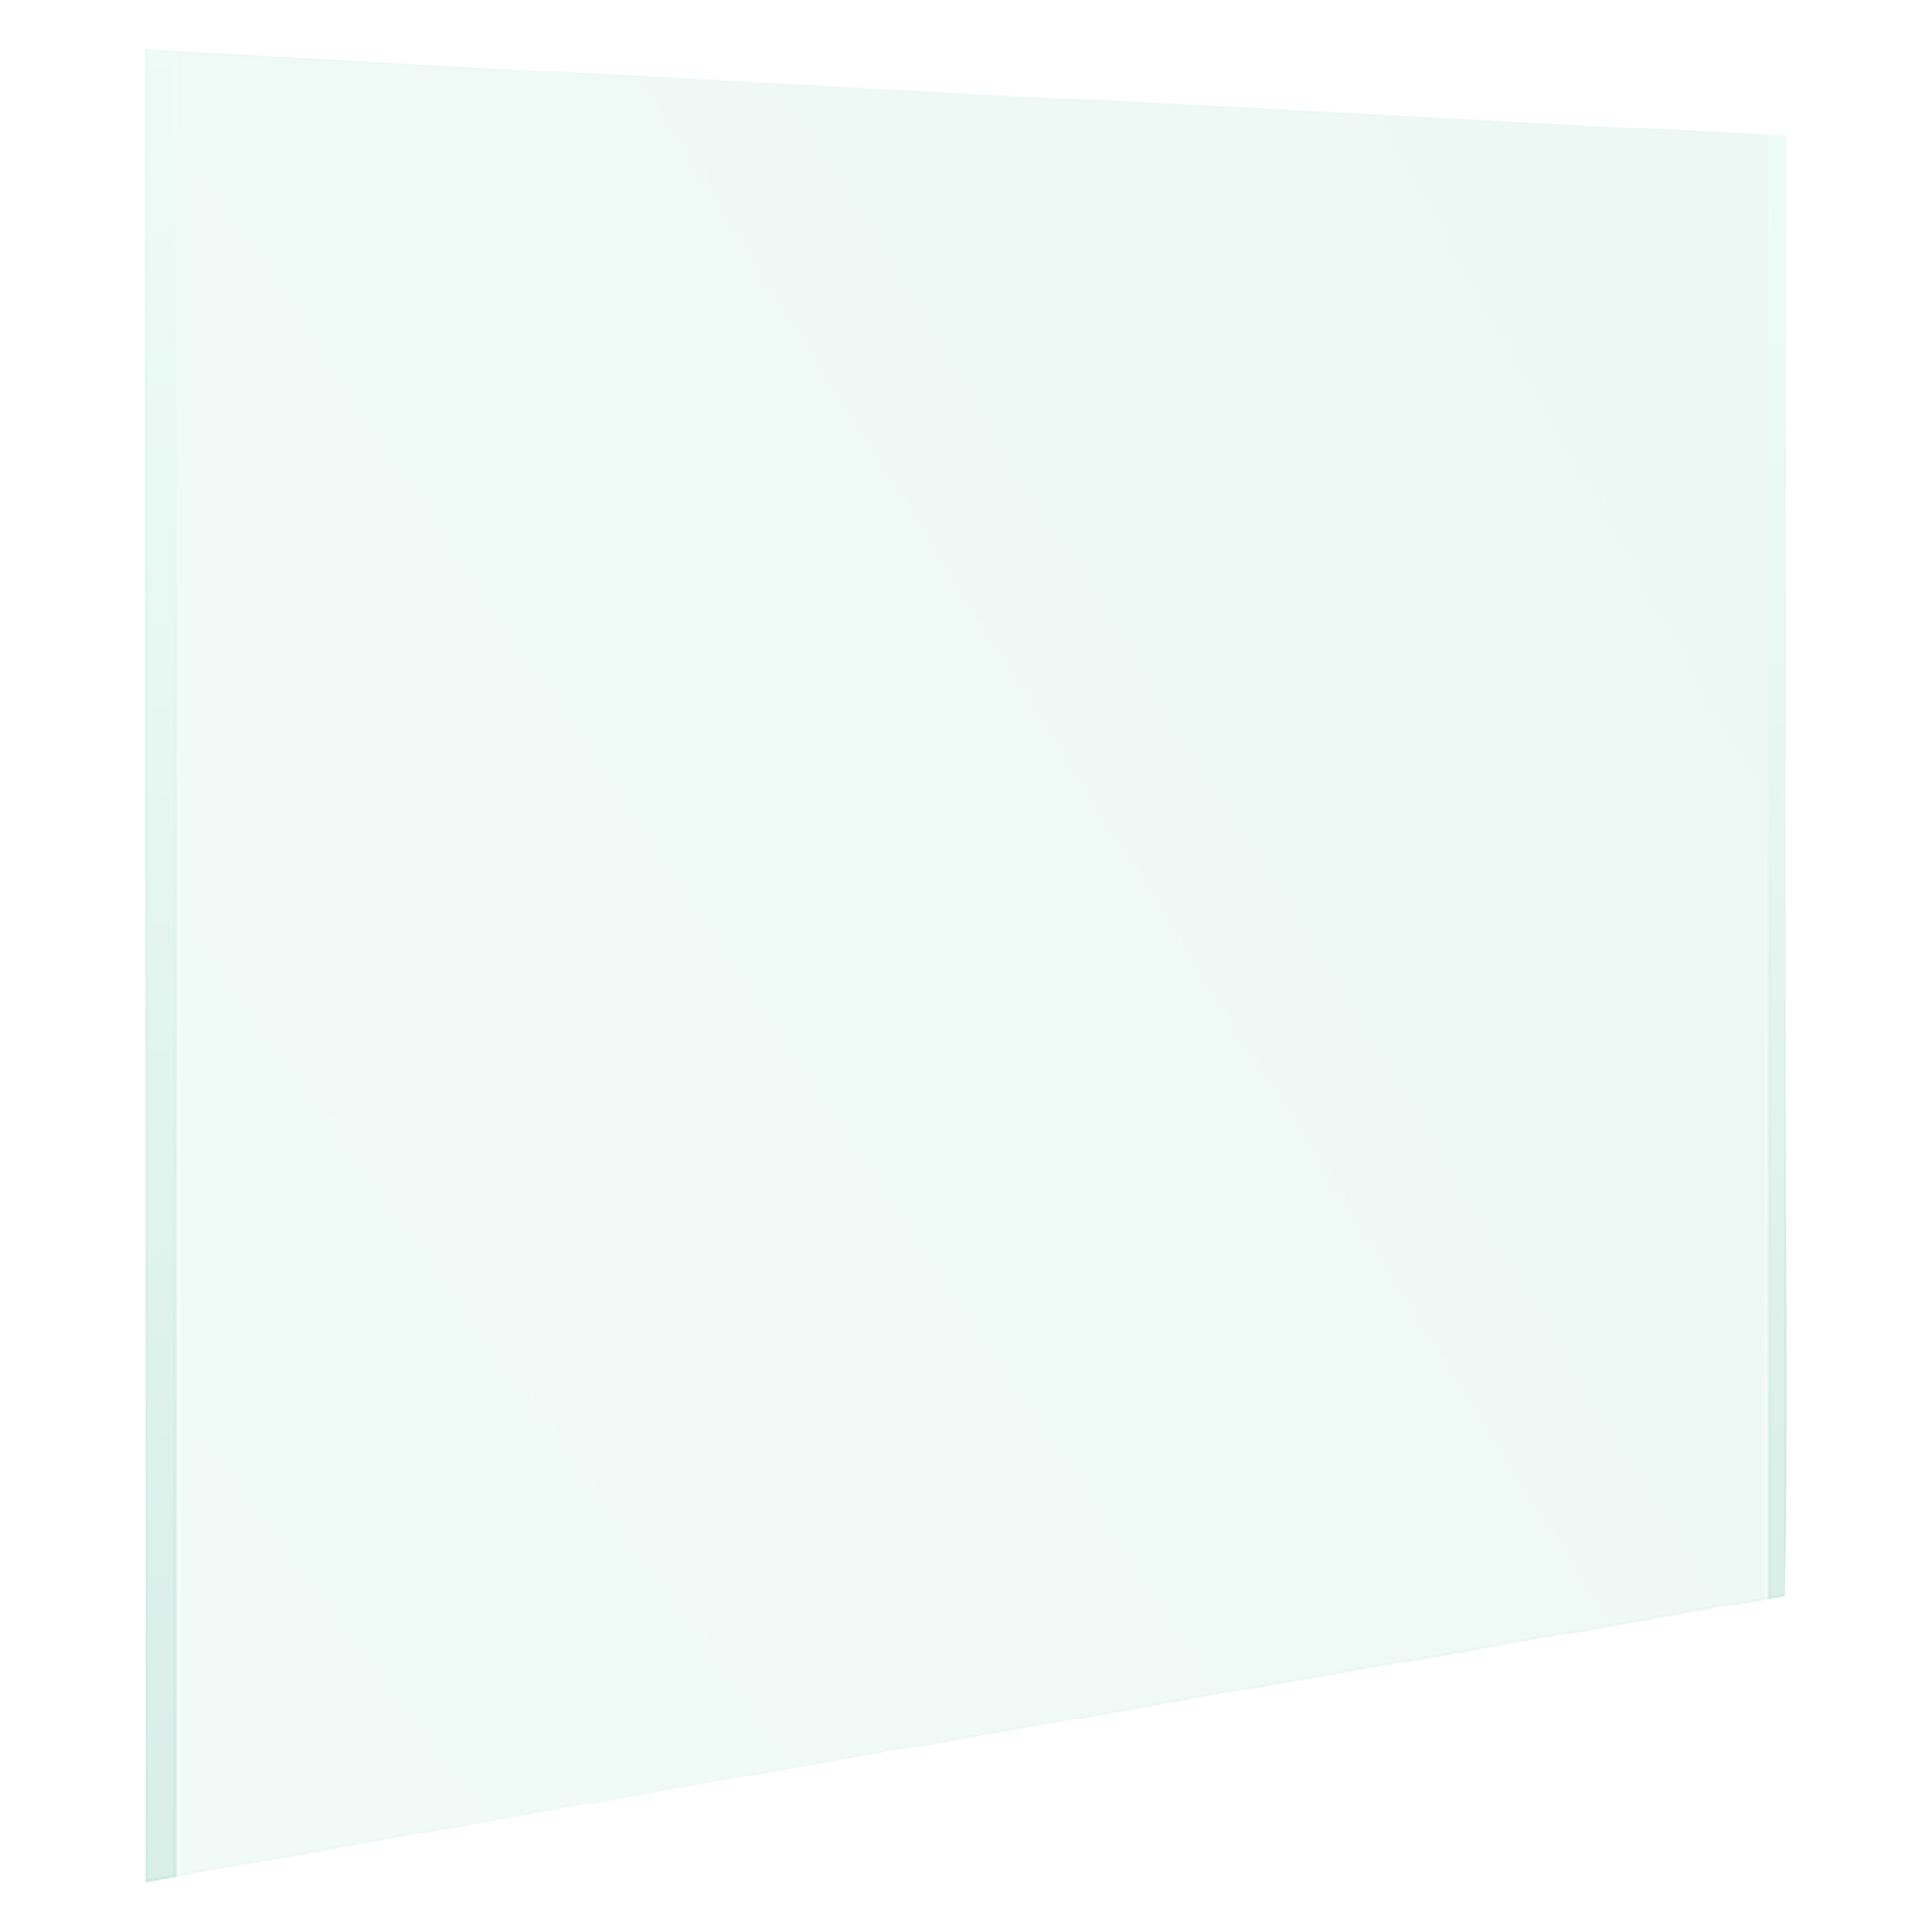 Funkenschutzplatte quadratisch 100 x 100 x 0,8 cm ESG transparent + product picture